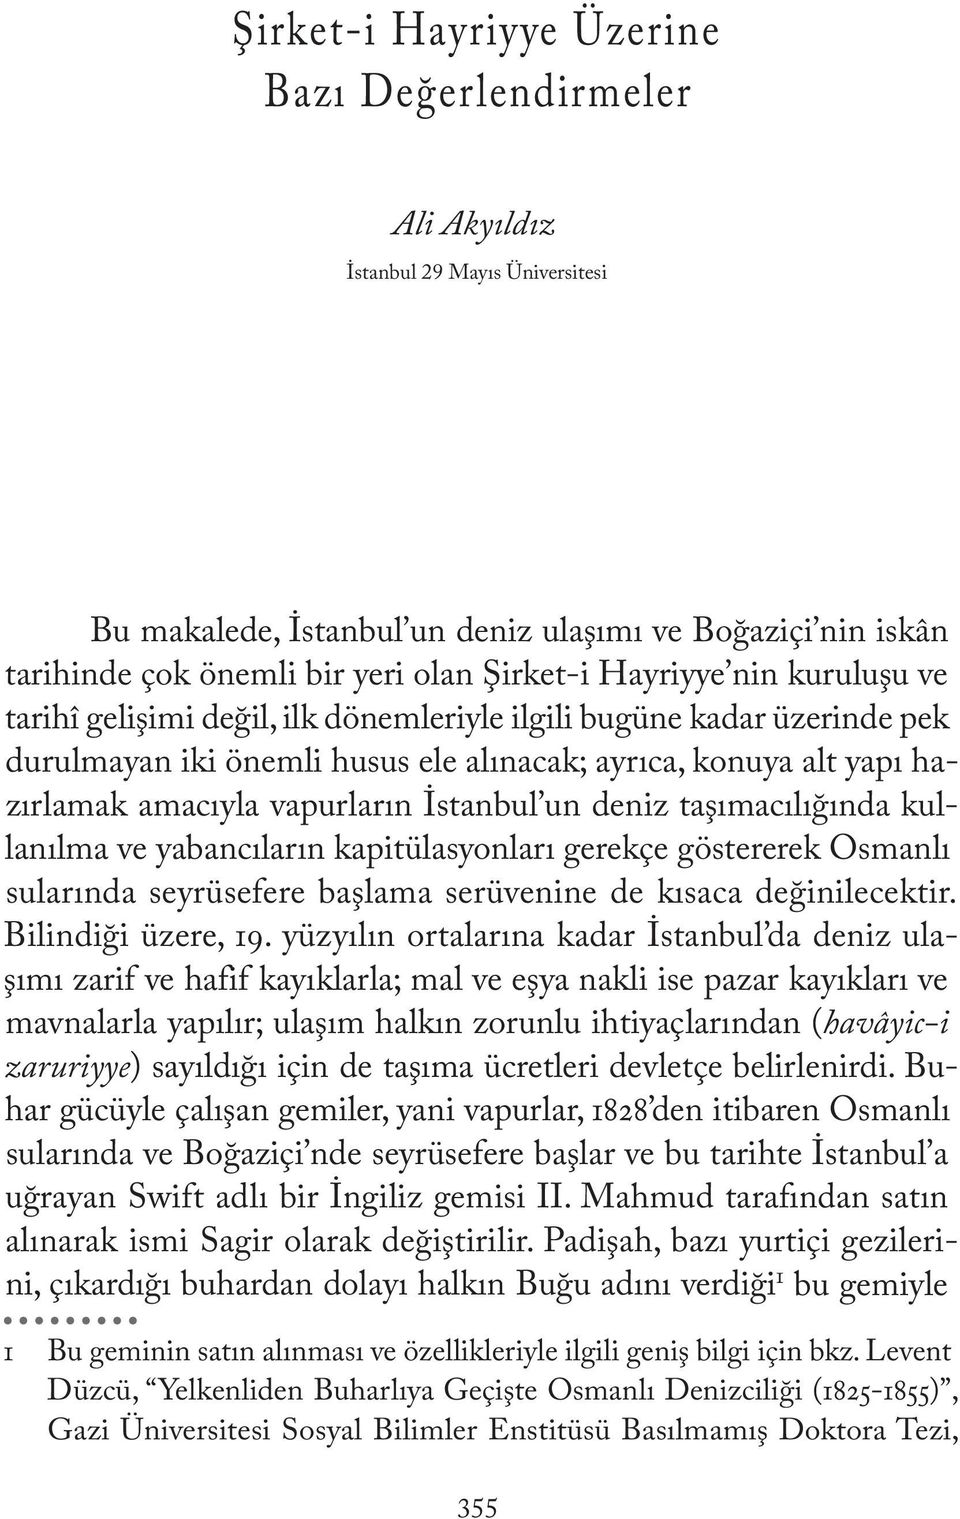 İstanbul un deniz taşımacılığında kullanılma ve yabancıların kapitülasyonları gerekçe göstererek Osmanlı sularında seyrüsefere başlama serüvenine de kısaca değinilecektir. Bilindiği üzere, 19.